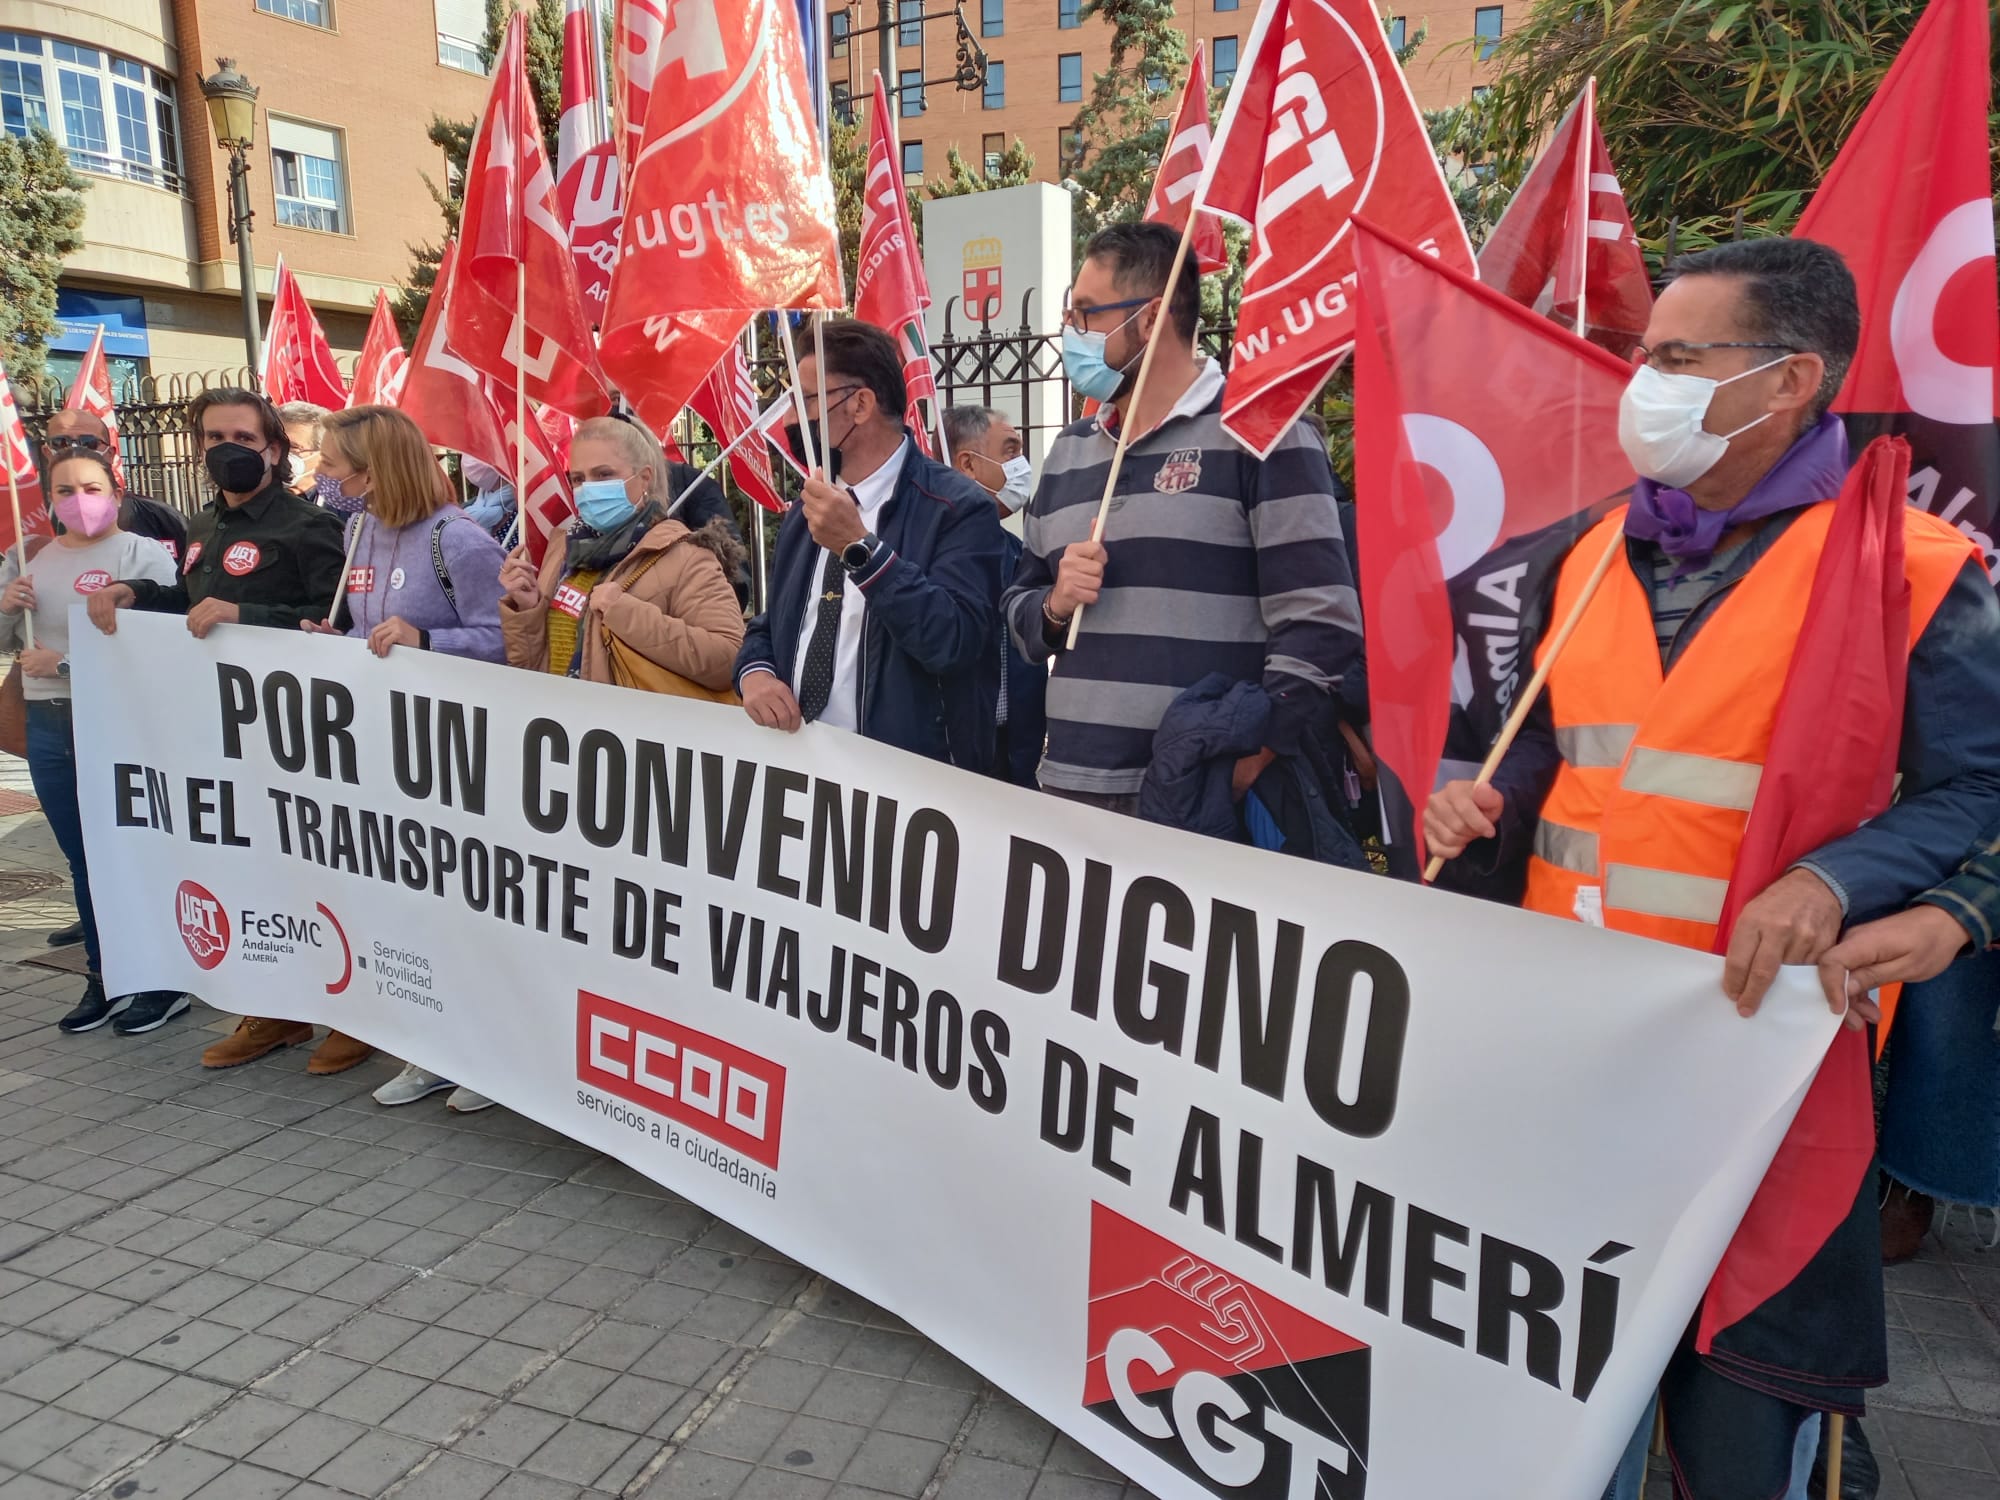 Concentracion frente a la Alcaldía de Almería de UGT, CCOO y CGT por un convenio digno del Transporte de viajeros en Almería